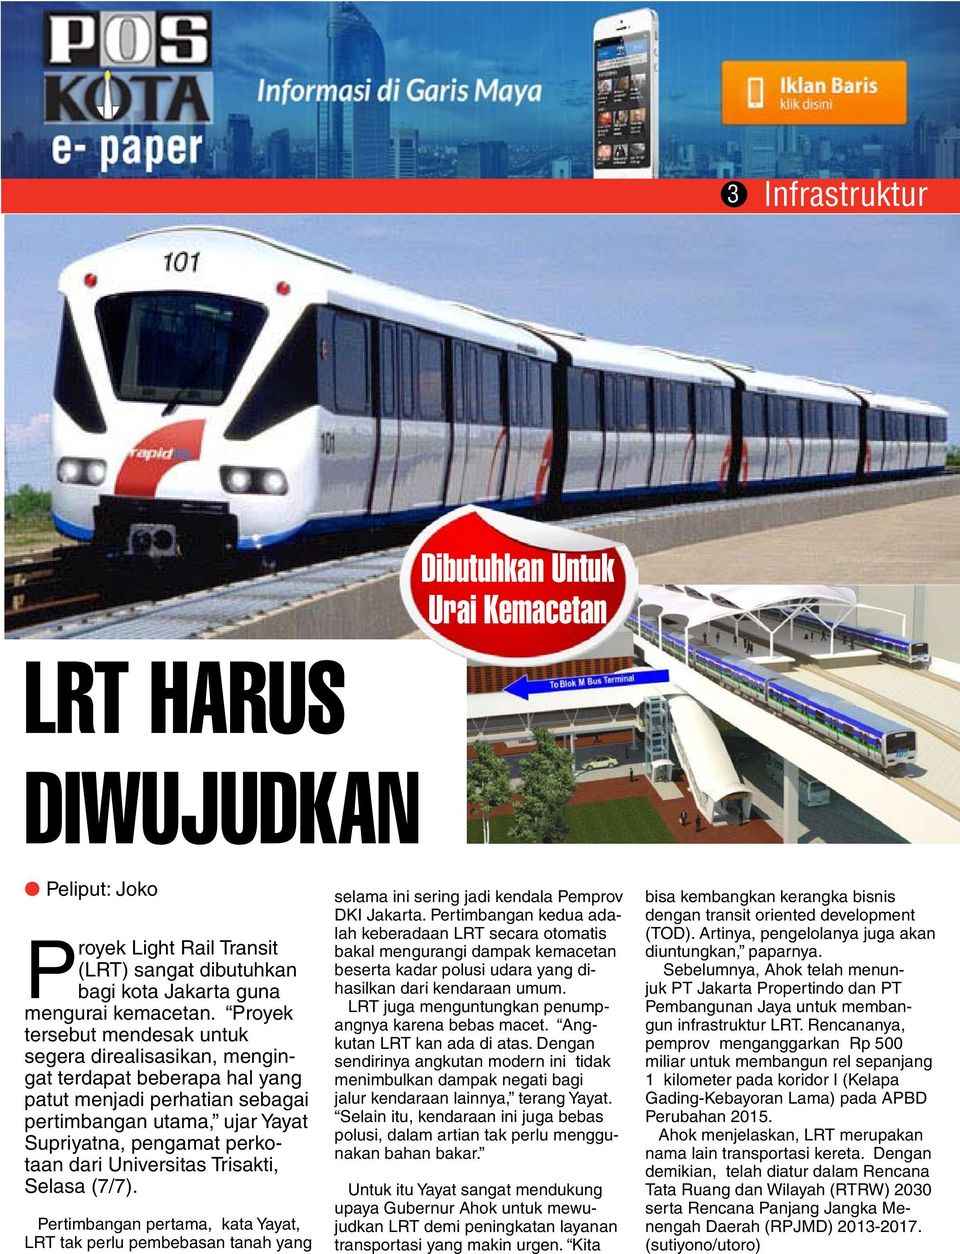 Universitas Trisakti, Selasa (7/7). Pertimbangan pertama, kata Yayat, LRT tak perlu pembebasan tanah yang selama ini sering jadi kendala Pemprov DKI Jakarta.